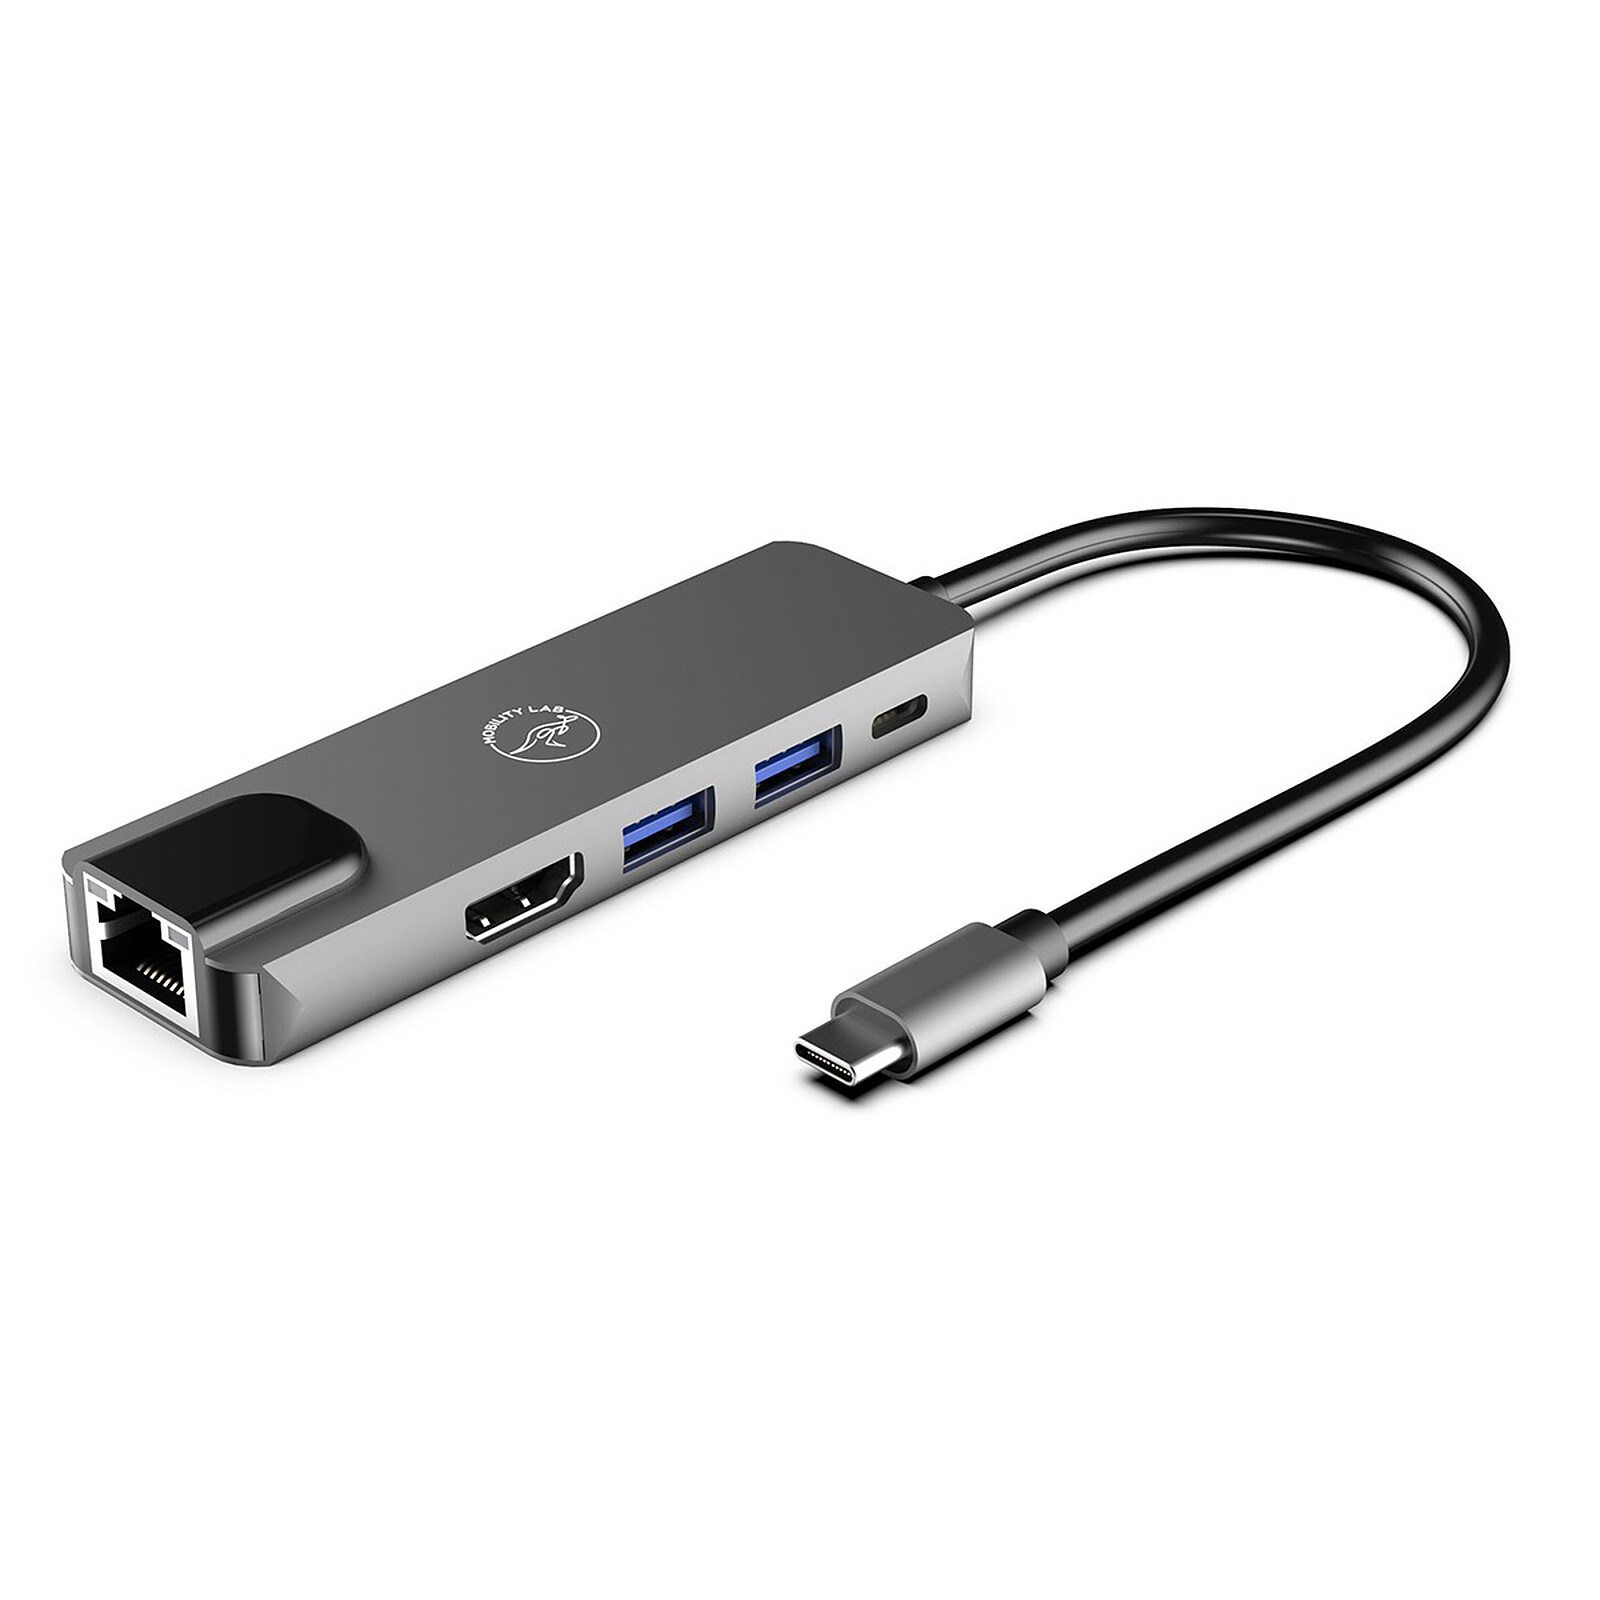 Cable extensión alargador para cargador de Macbook